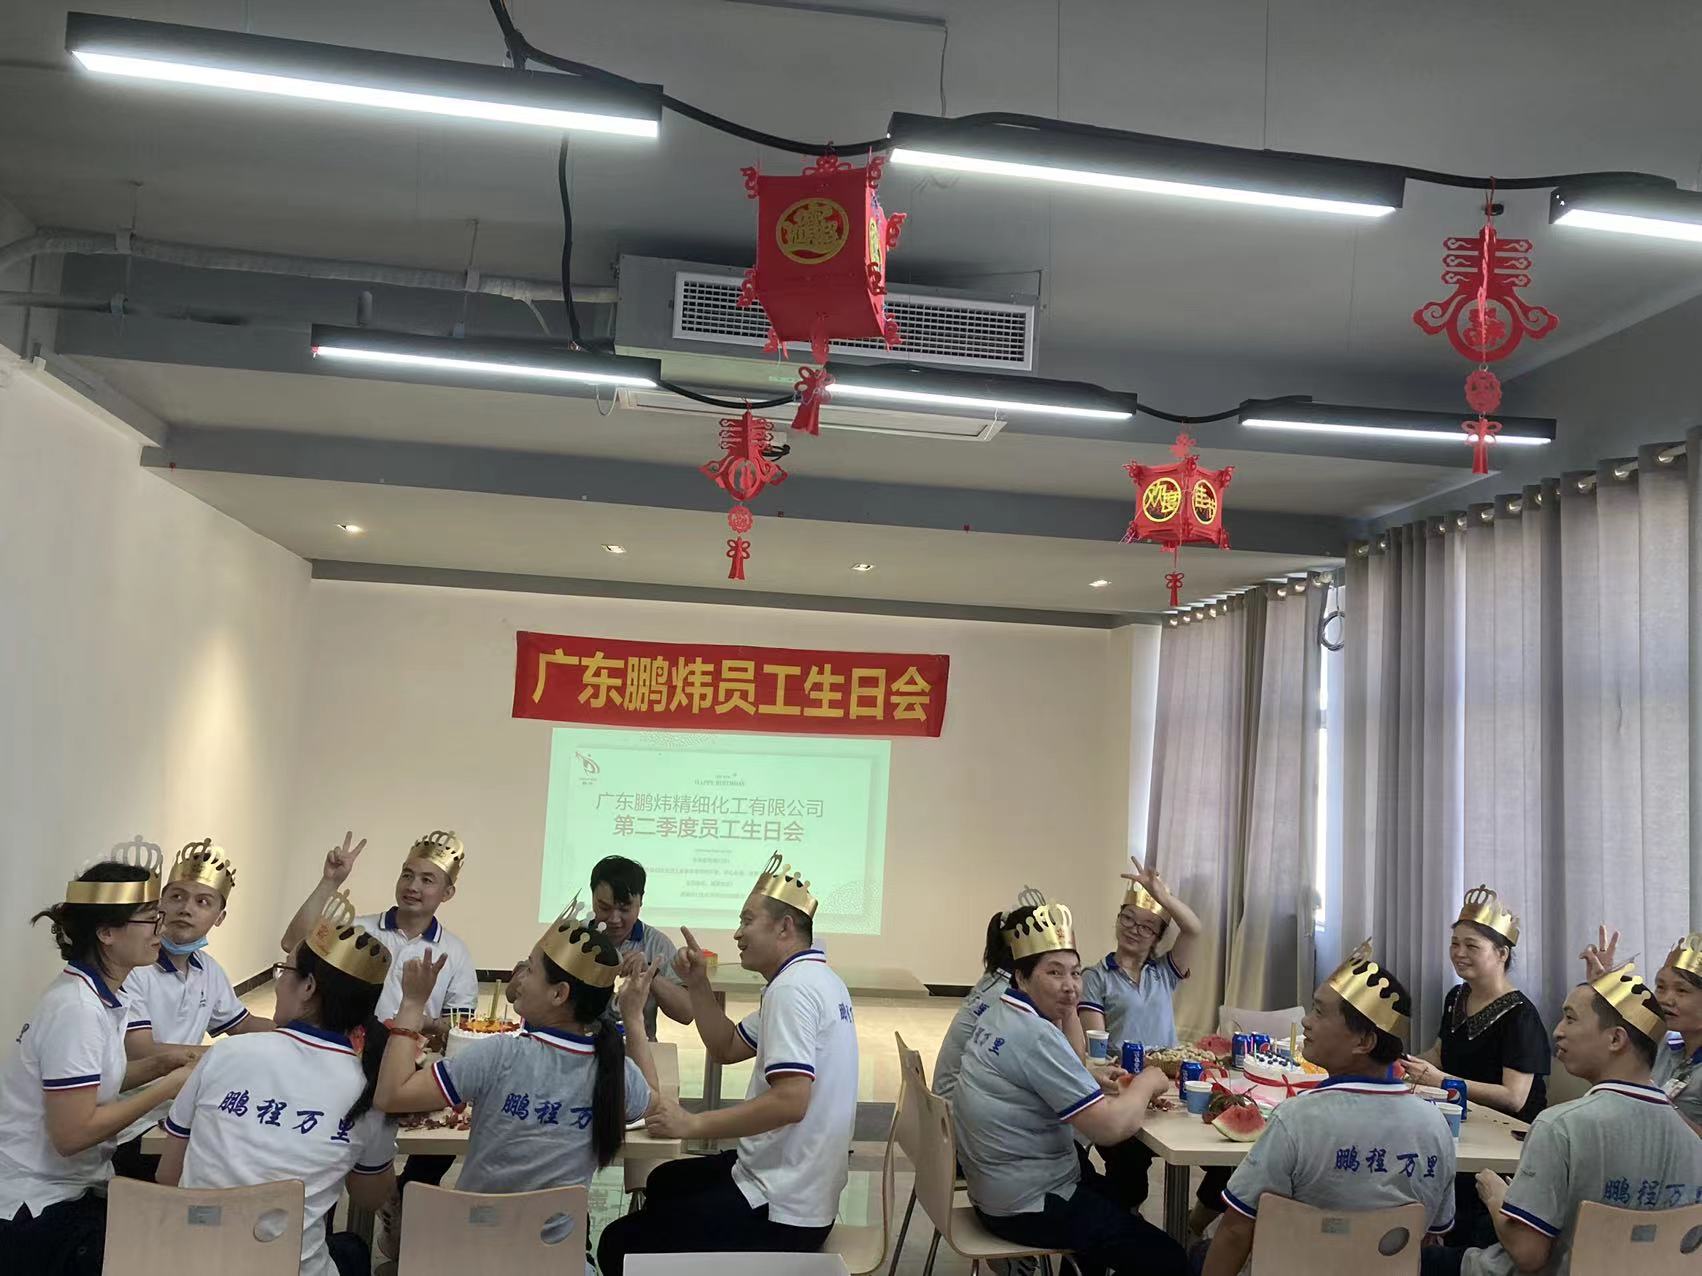 2022 ஆம் ஆண்டின் இரண்டாம் காலாண்டில் Pengwei 丨 ஊழியர்களின் பிறந்தநாள் விழா